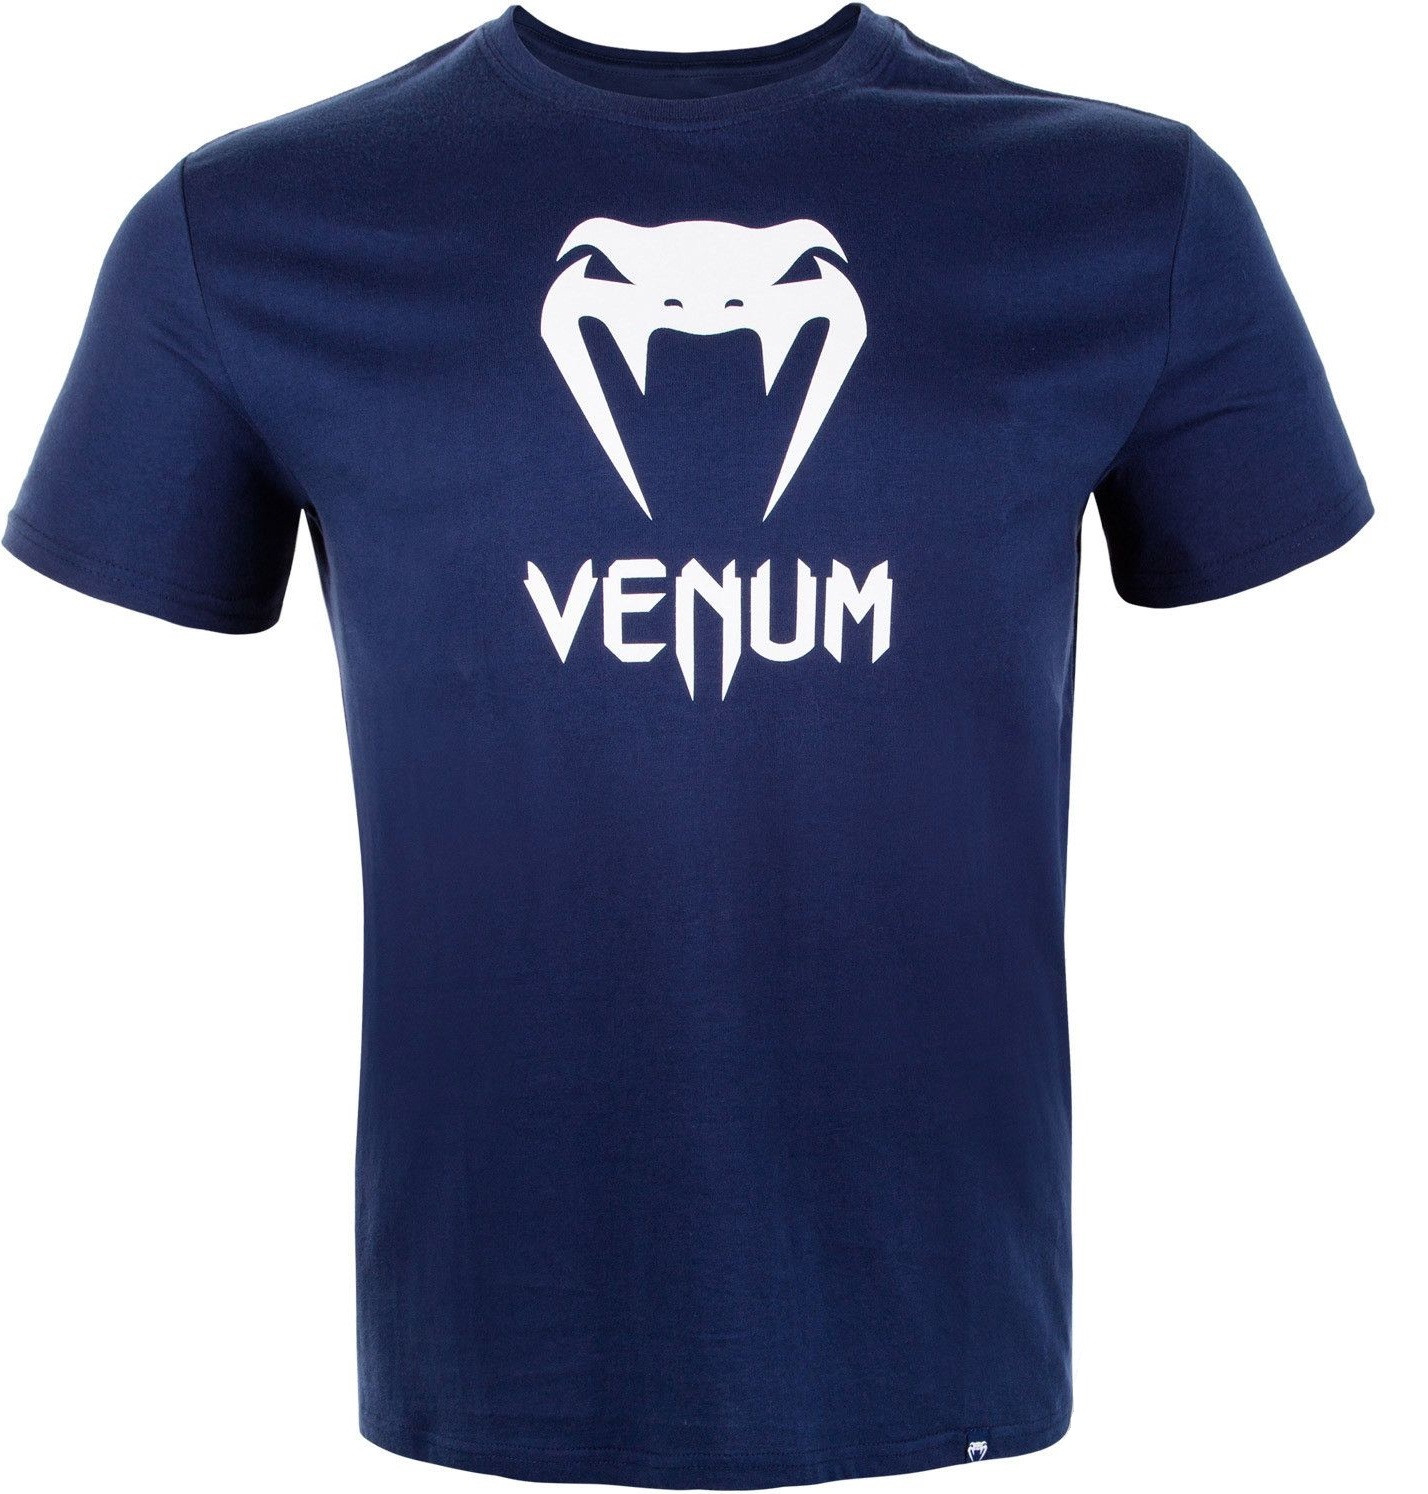 Футболка Venum Classic детская, р.164, темно-синий